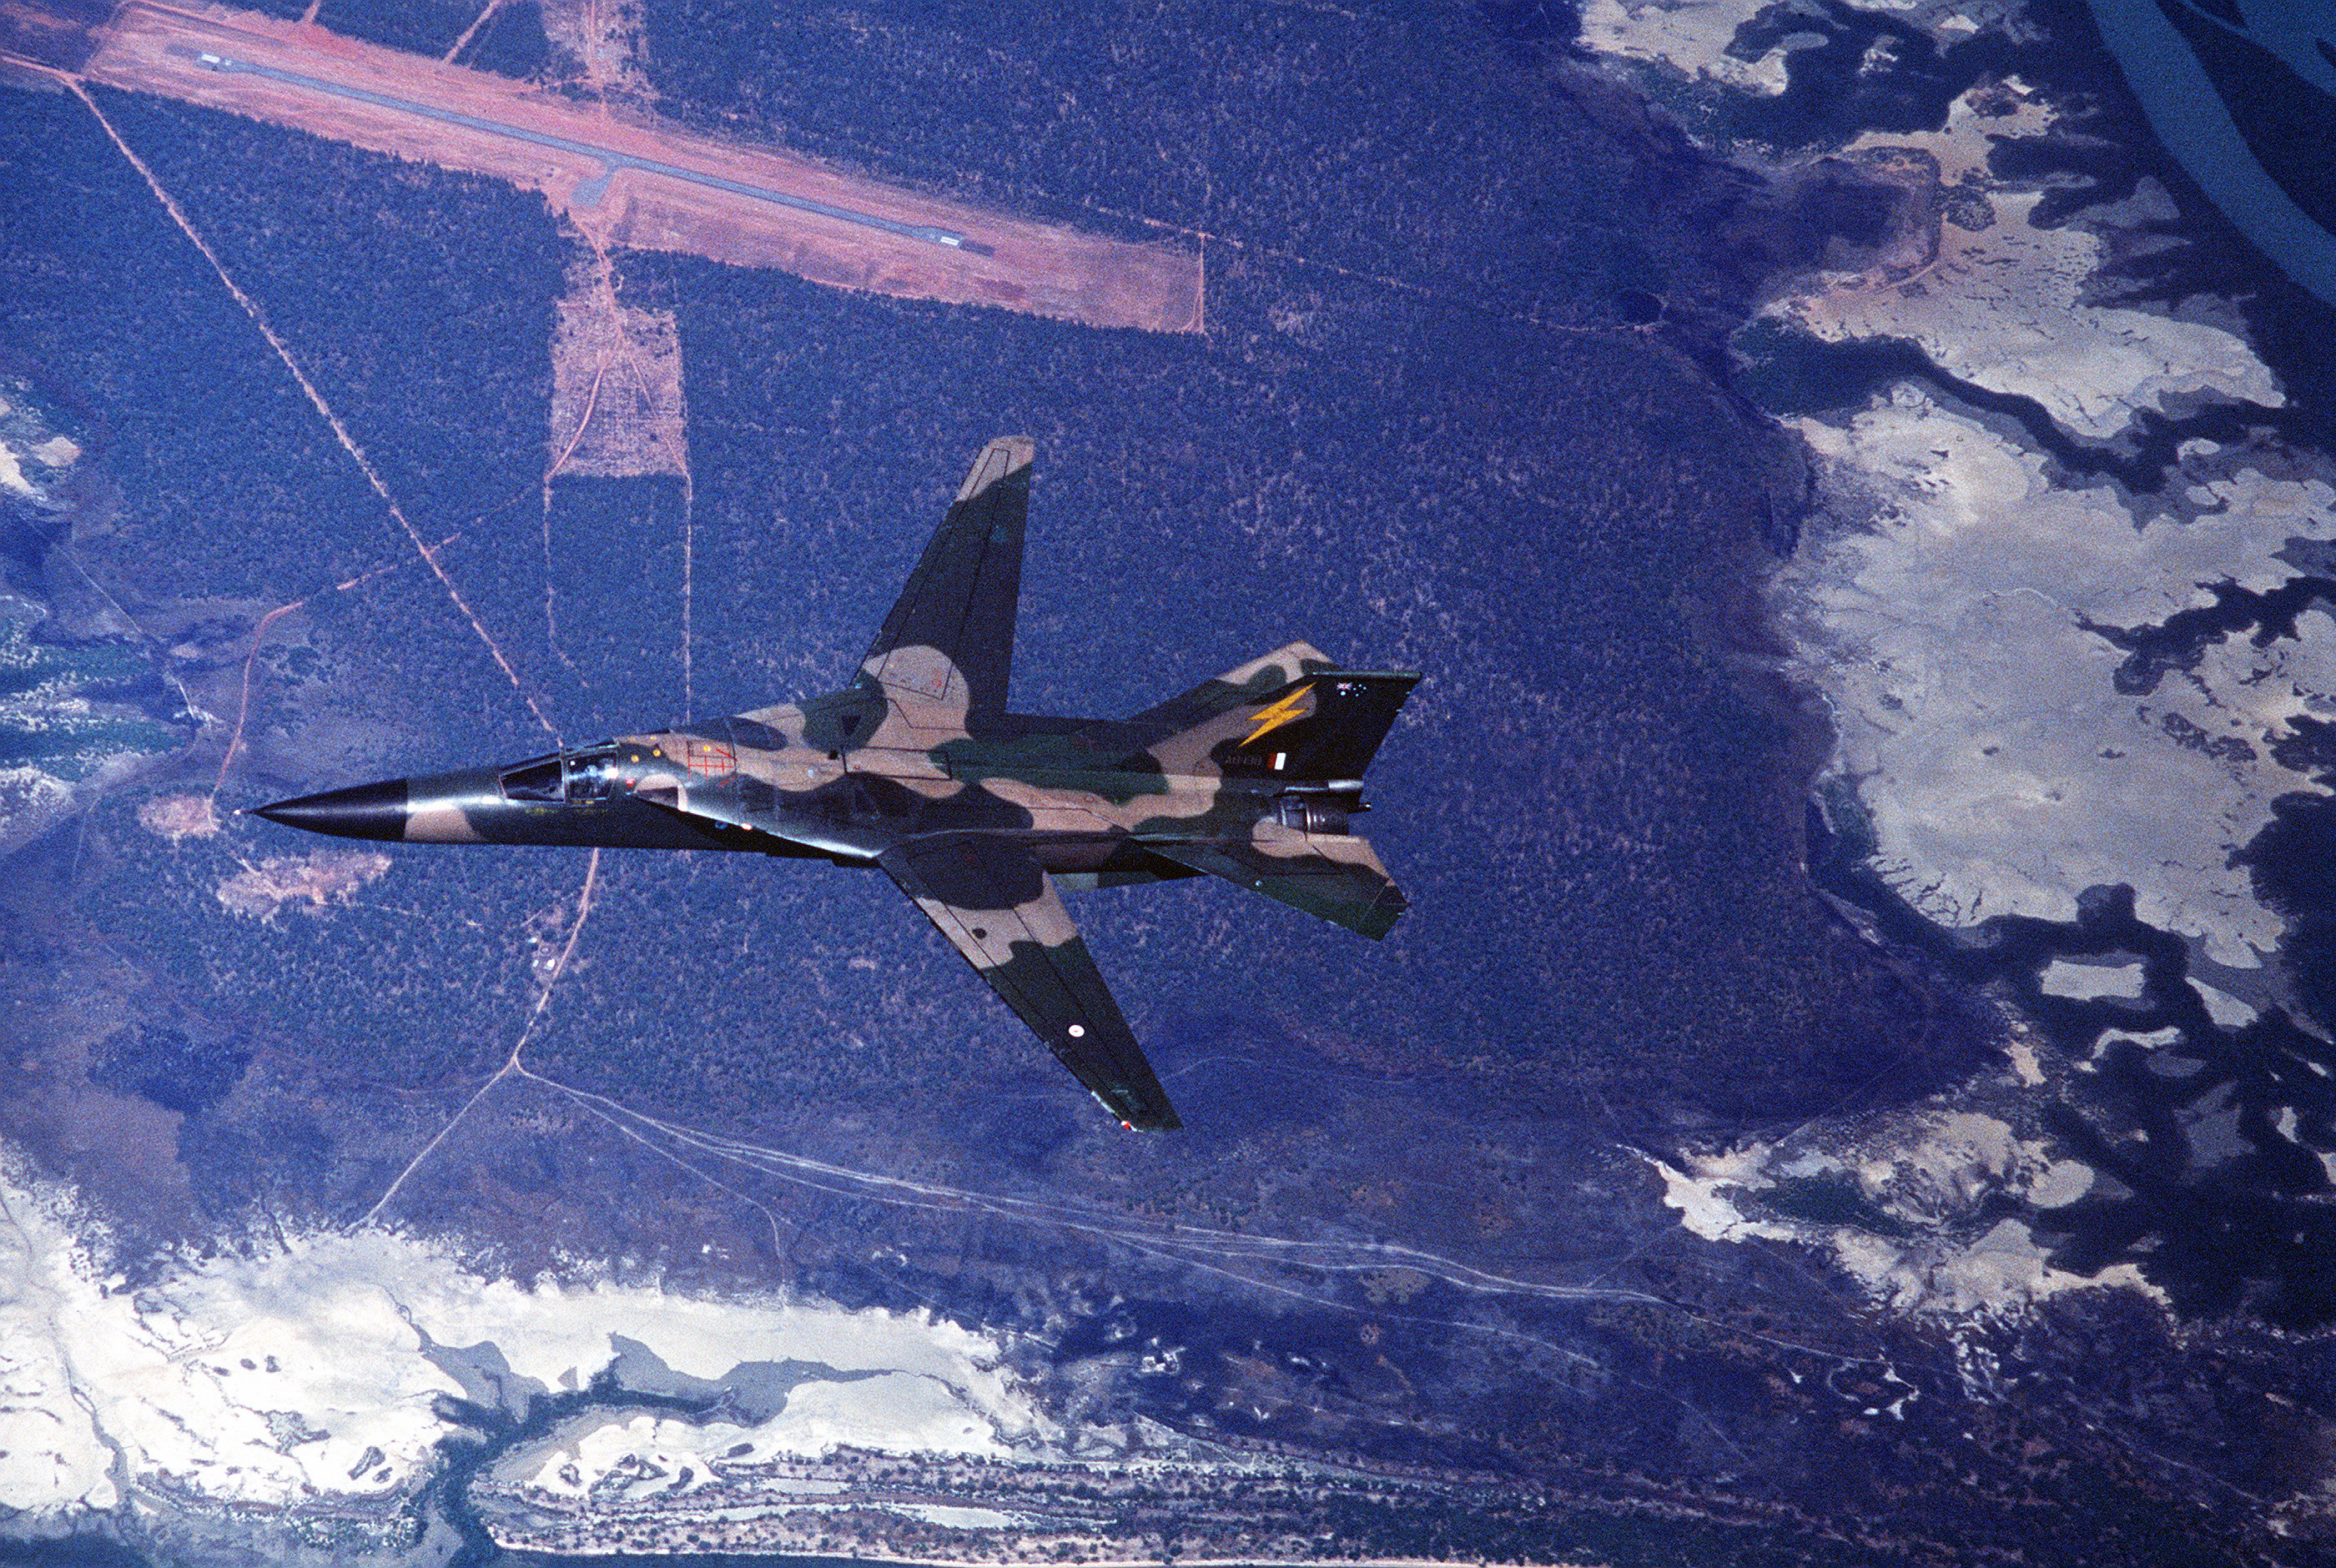 RAAF General Dynamics F-111C Aardvark in flight